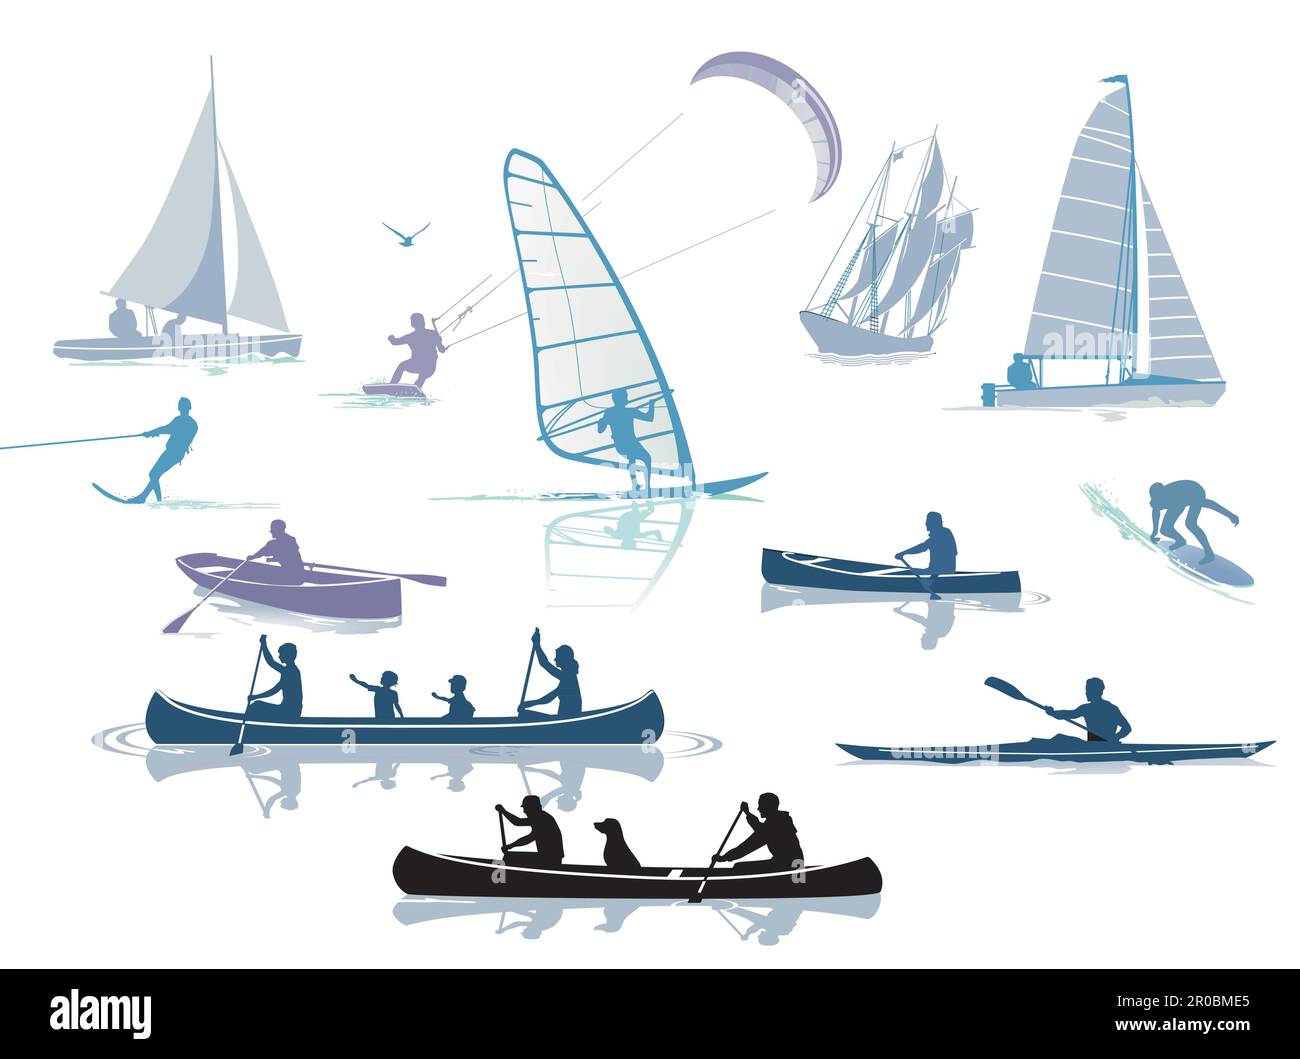 Wassersport in der Freizeit, Illustration Stock Vektor